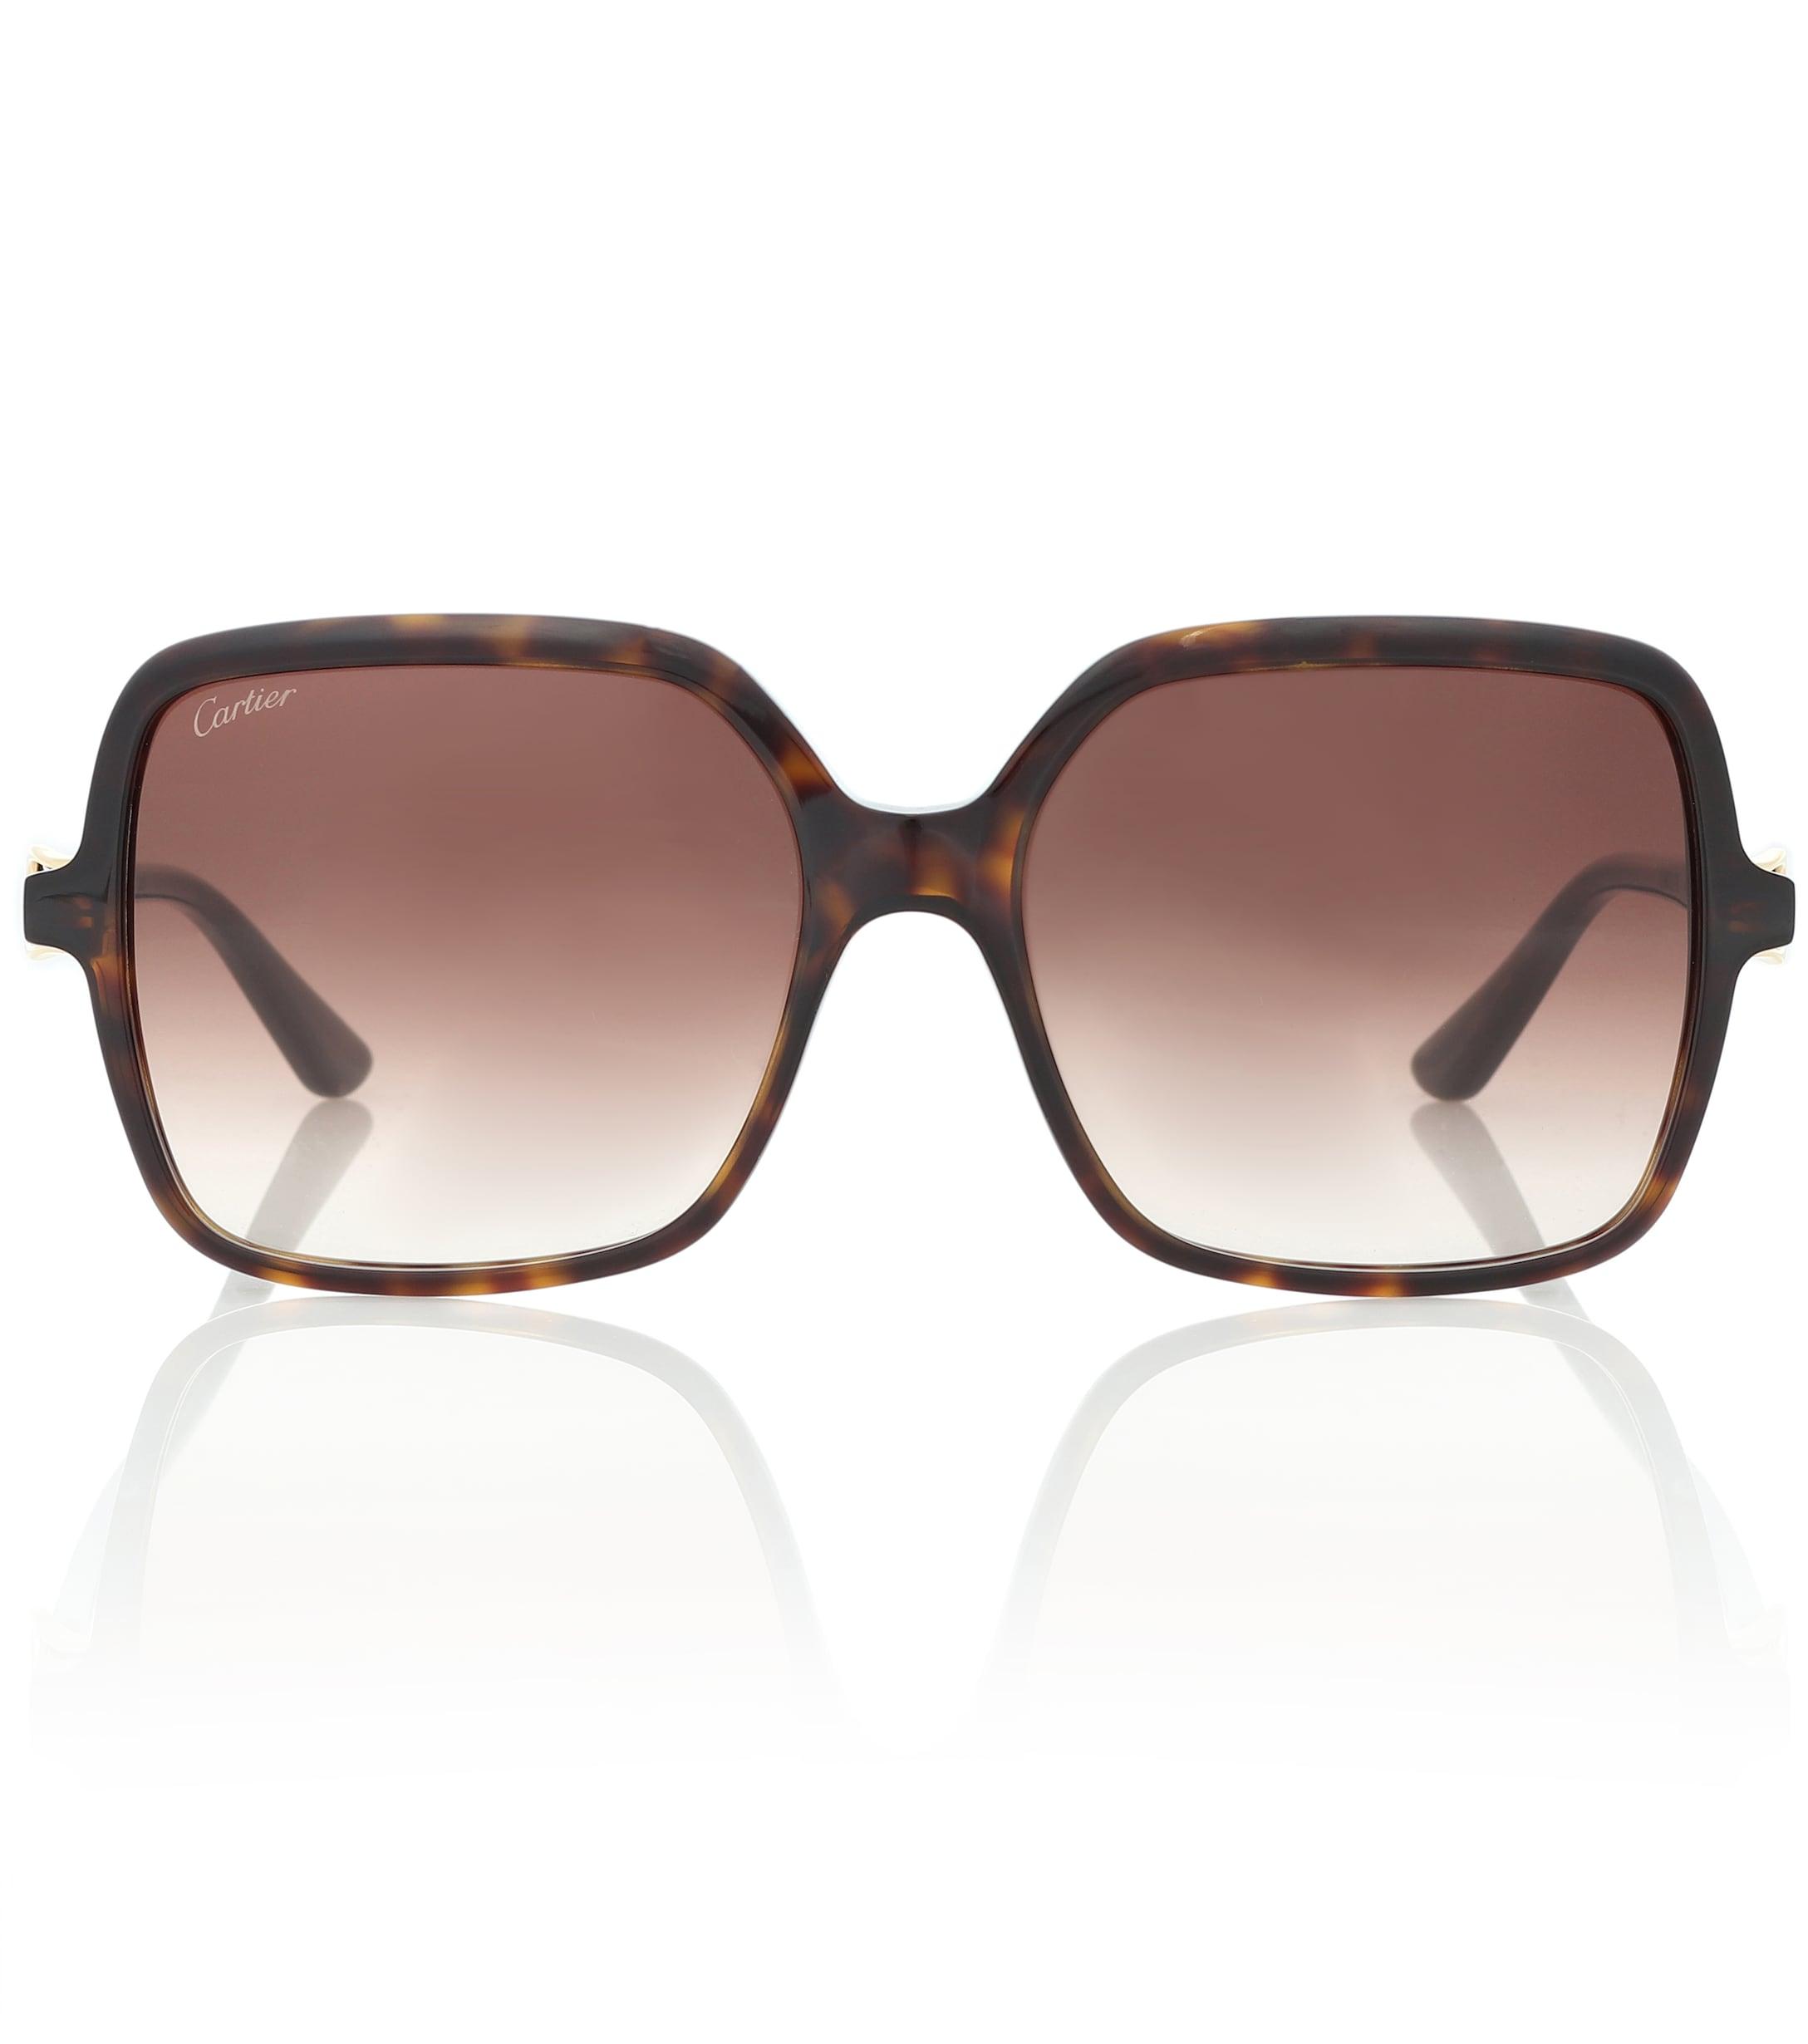 Cartier Signature C Square Sunglasses in Brown - Lyst